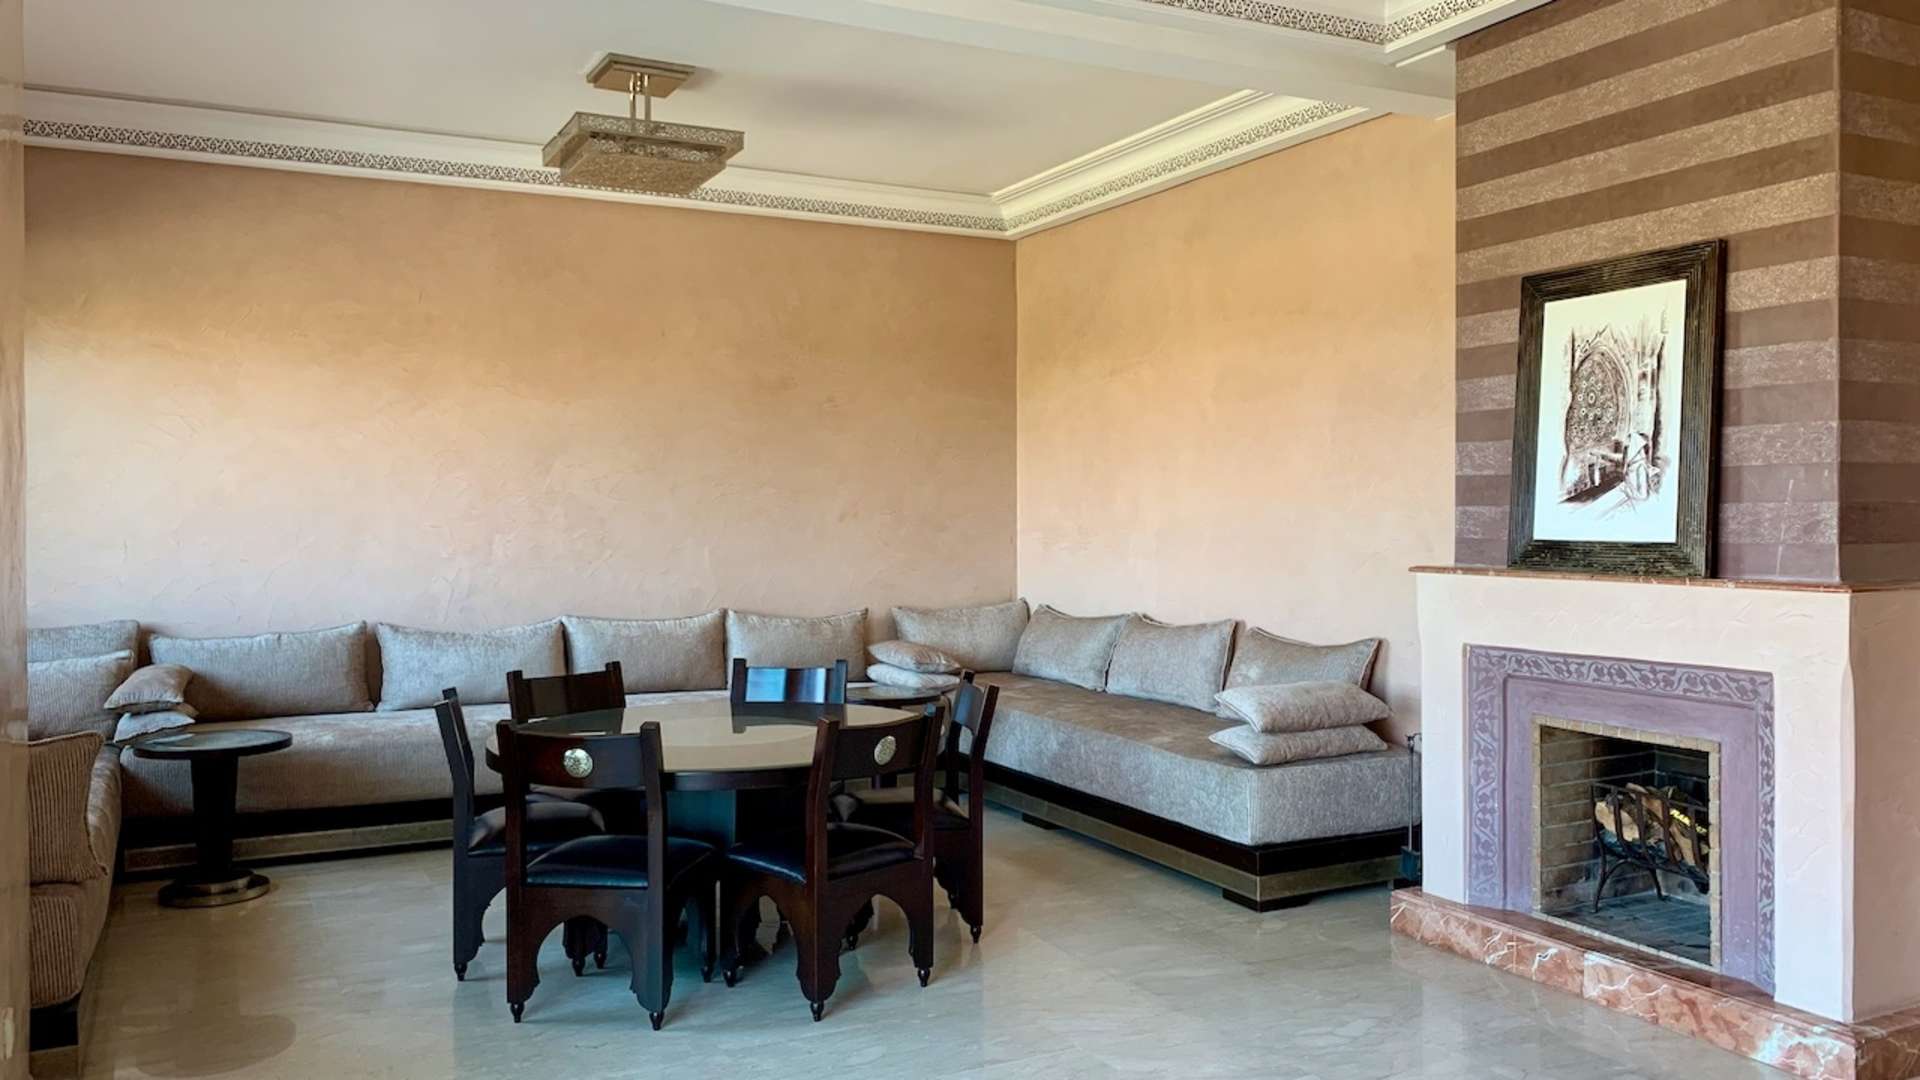 Location longue durée ,Appartement,Splendide Appartement 3ch Salon avec ch de personnel avenue Mohamed VI Marrakech,Marrakech,Av. Mohamed VI